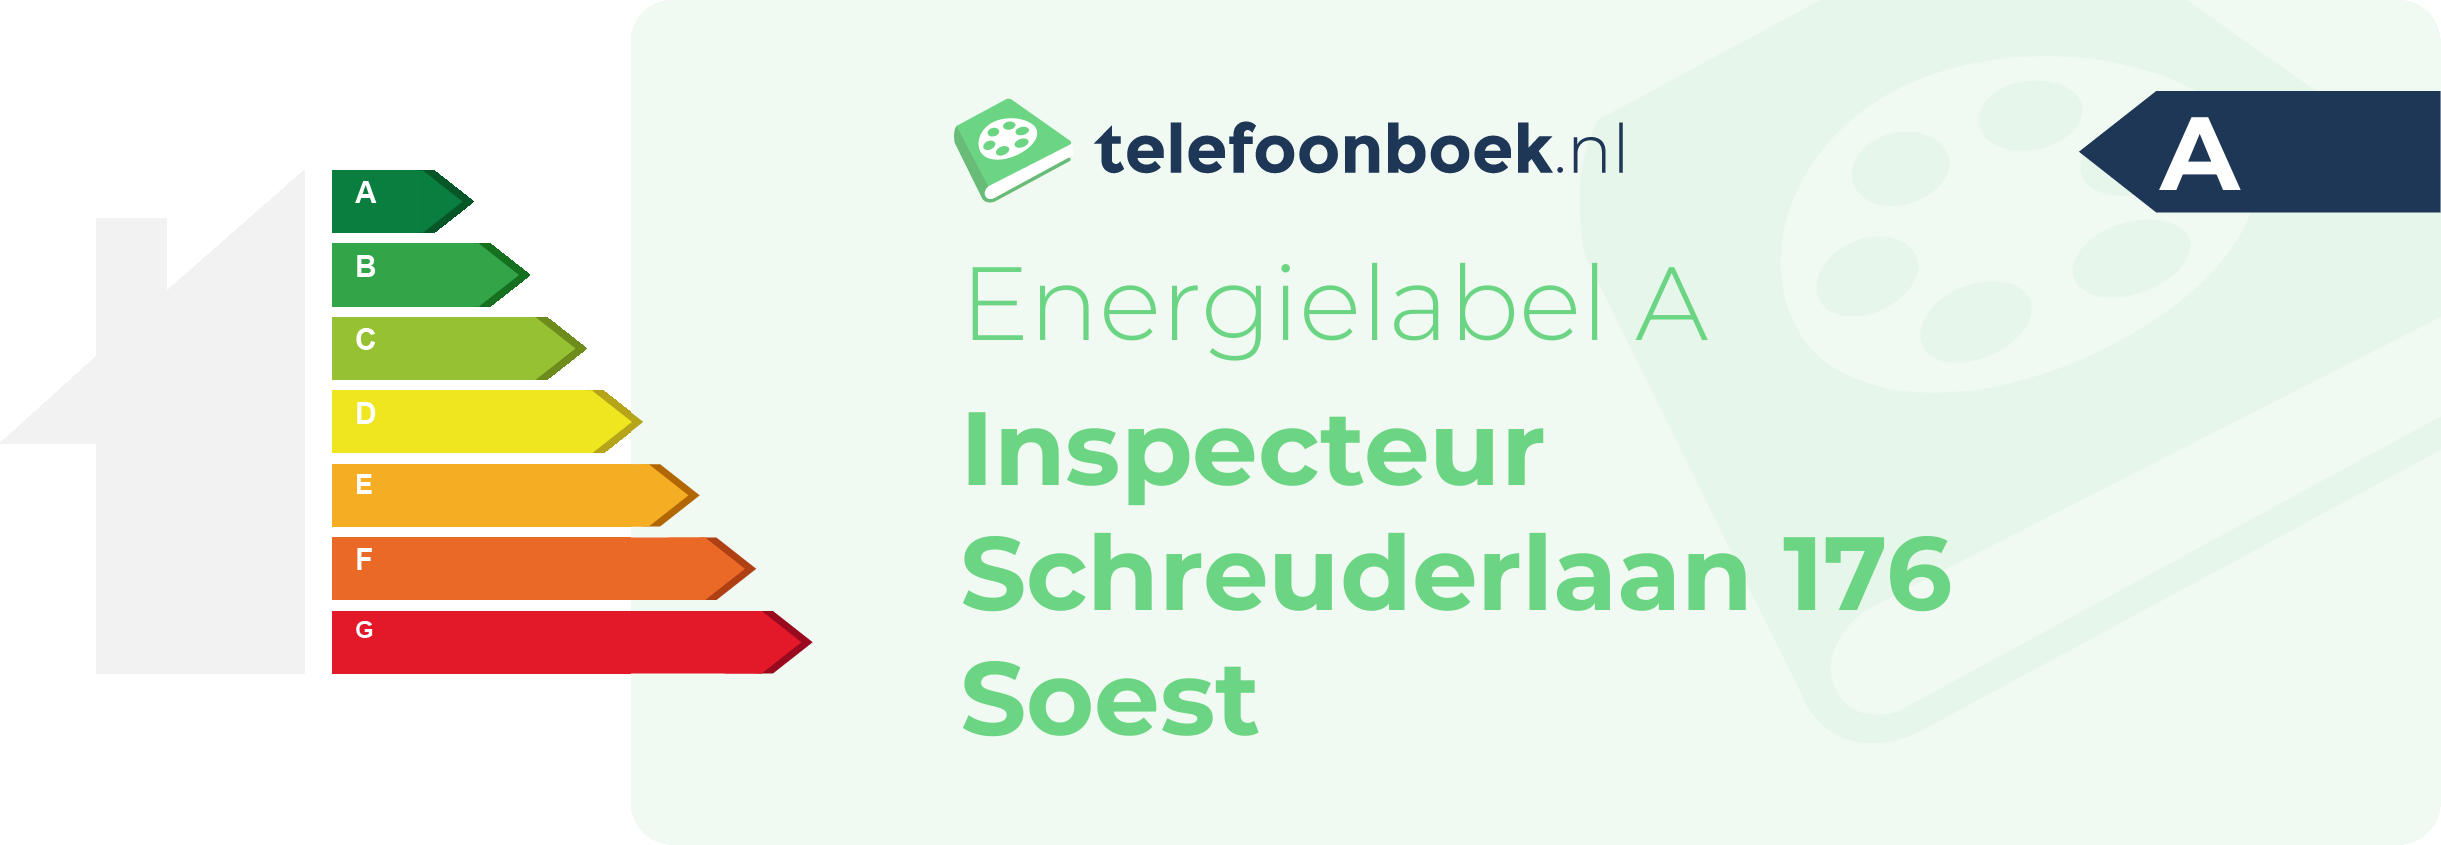 Energielabel Inspecteur Schreuderlaan 176 Soest